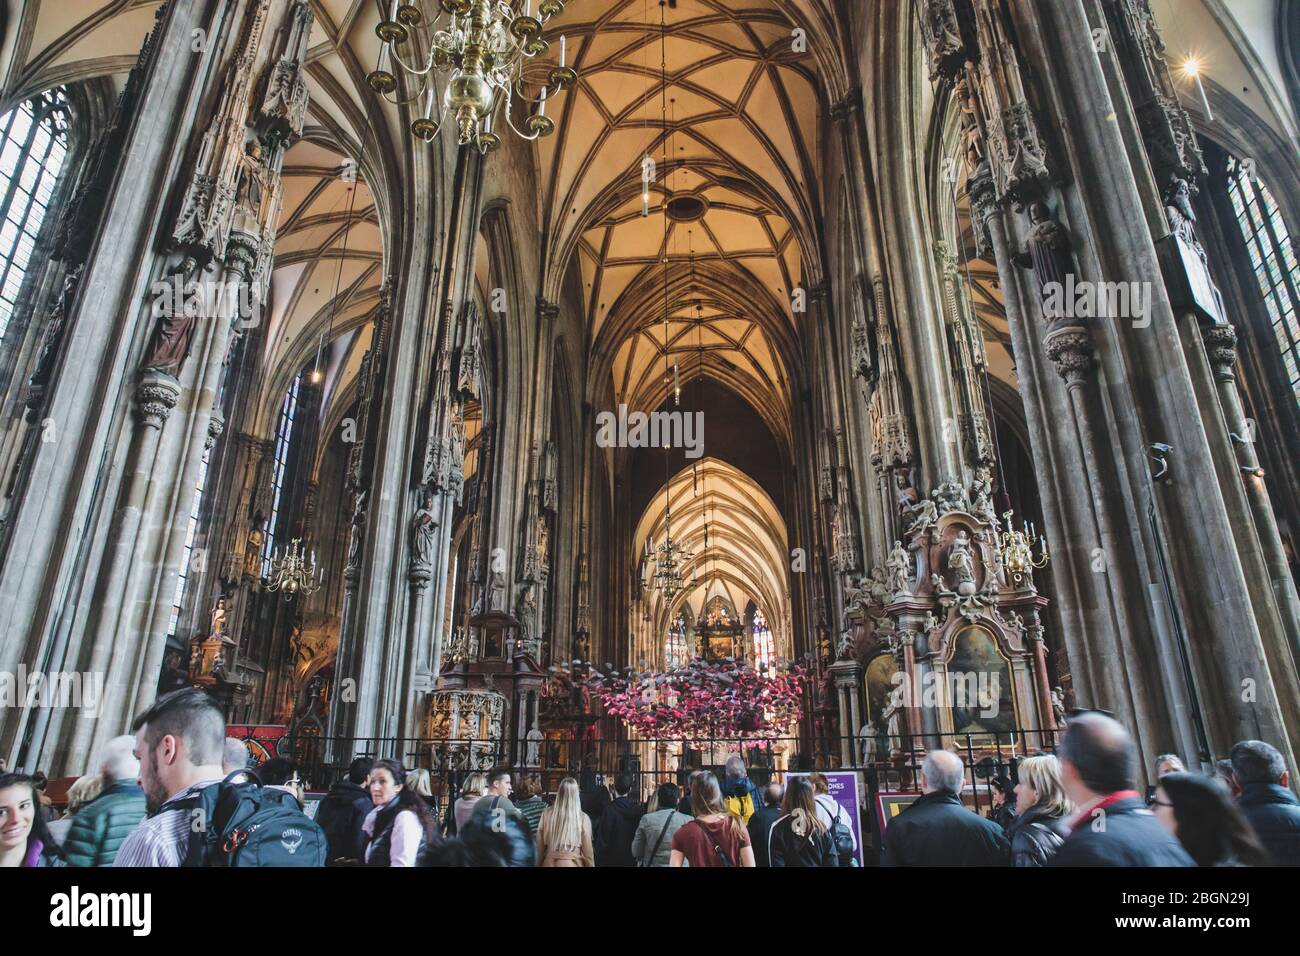 Wien, Österreich - 23. März 2019: Majestätisches Interieur des Stephansdoms in Wien, Österreich, heilige katolische Kirchenarchitektur Stockfoto